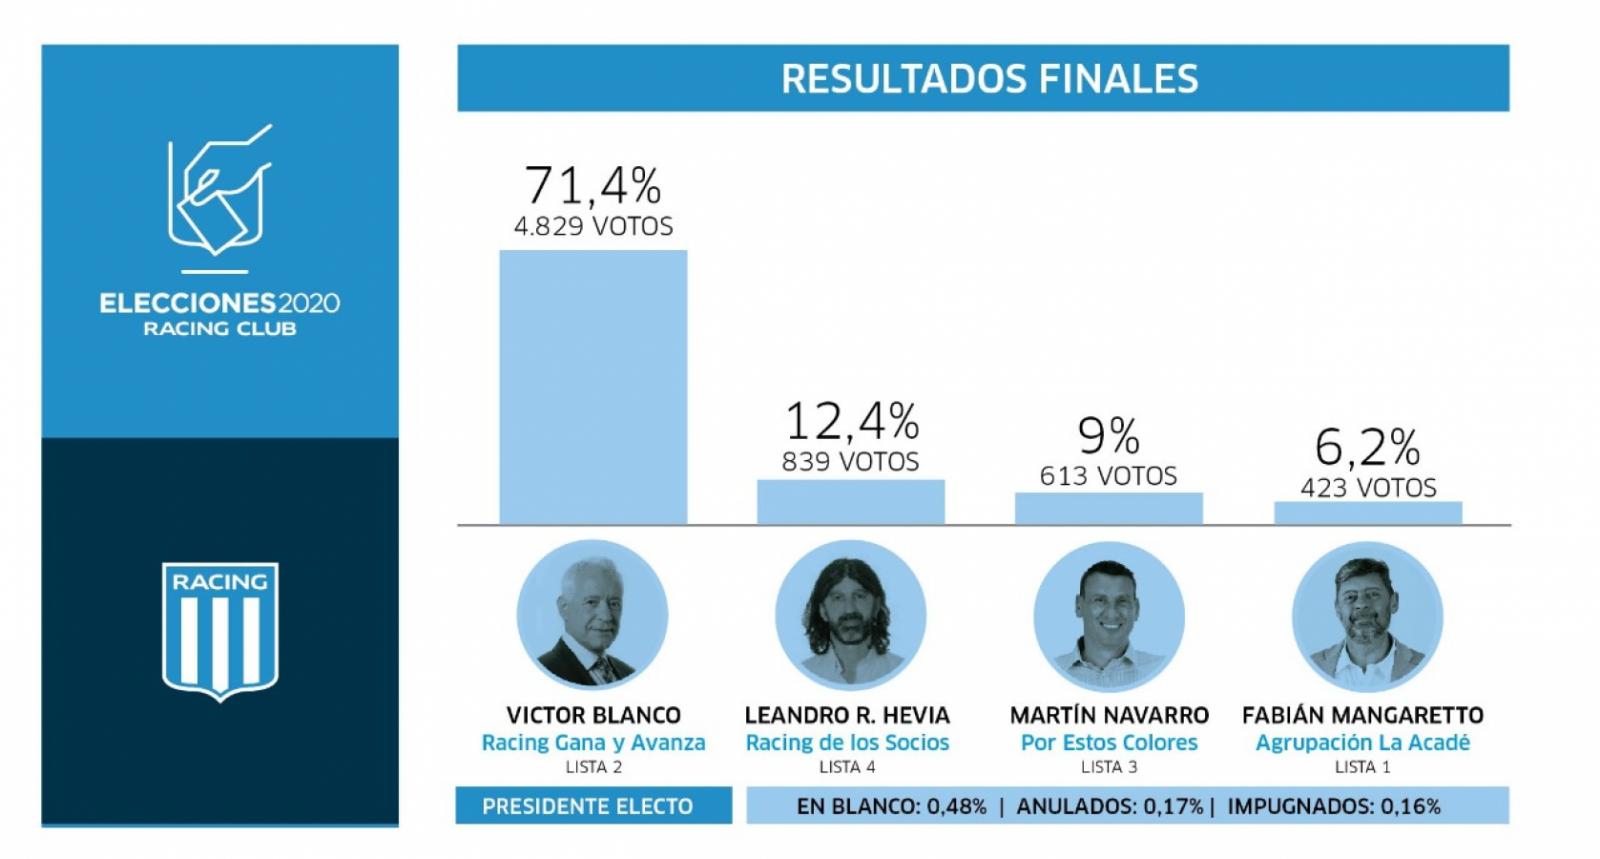 Imagen Blanco ganó con más del 70 por ciento de los votos. Victoria aplastante.